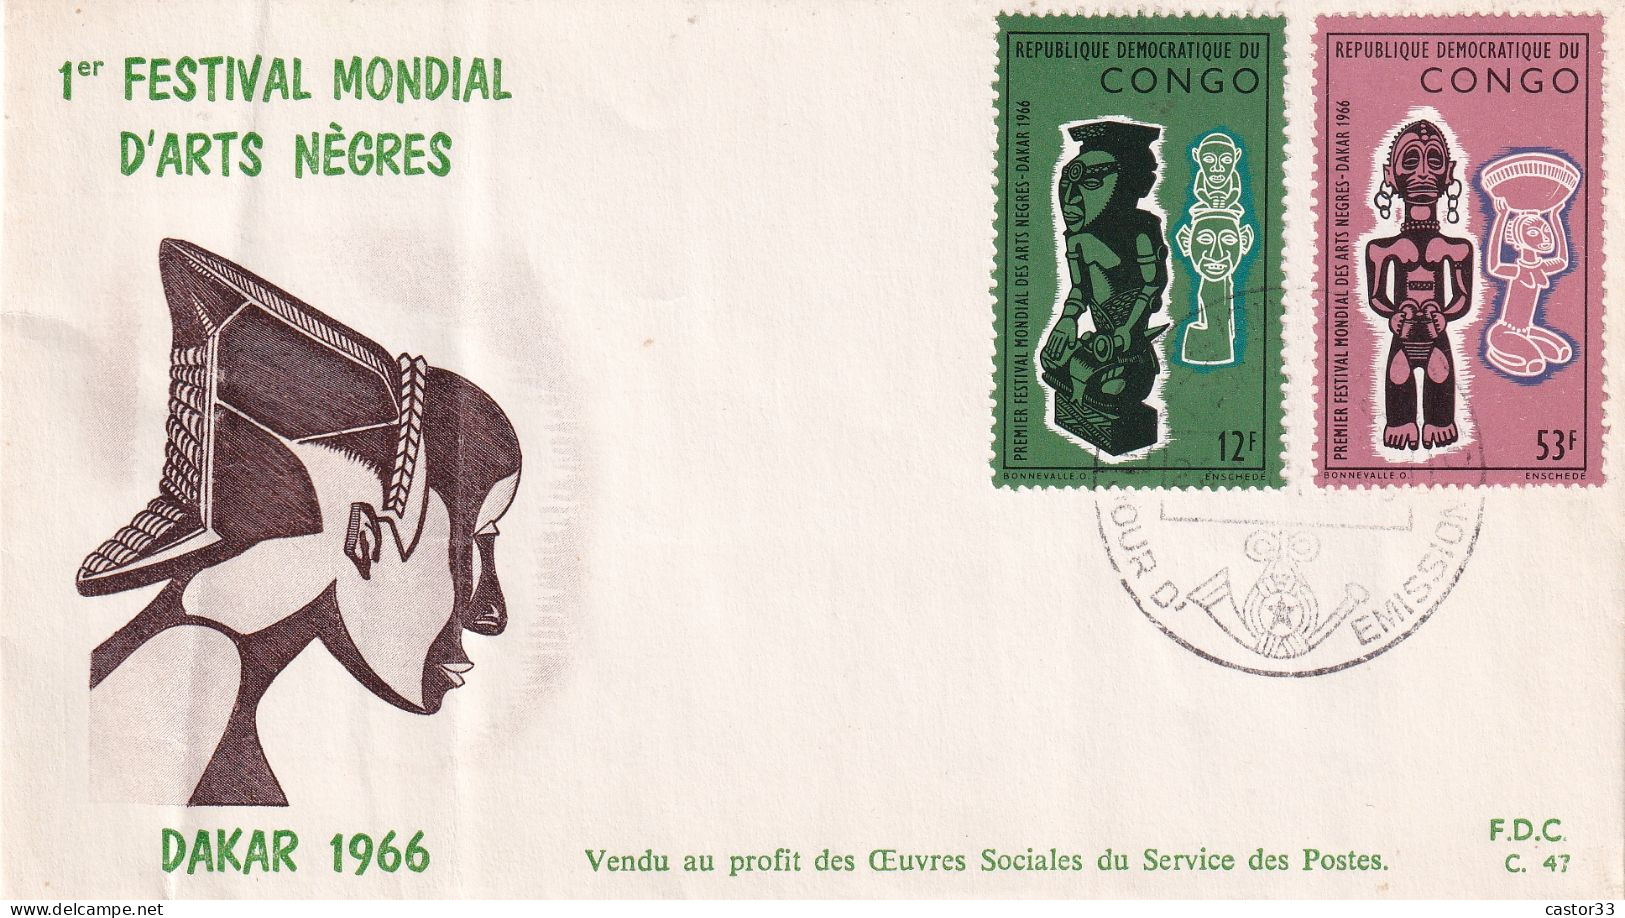 1er Festival Mondial D'Arts Nègres, Dakar 1966 - FDC